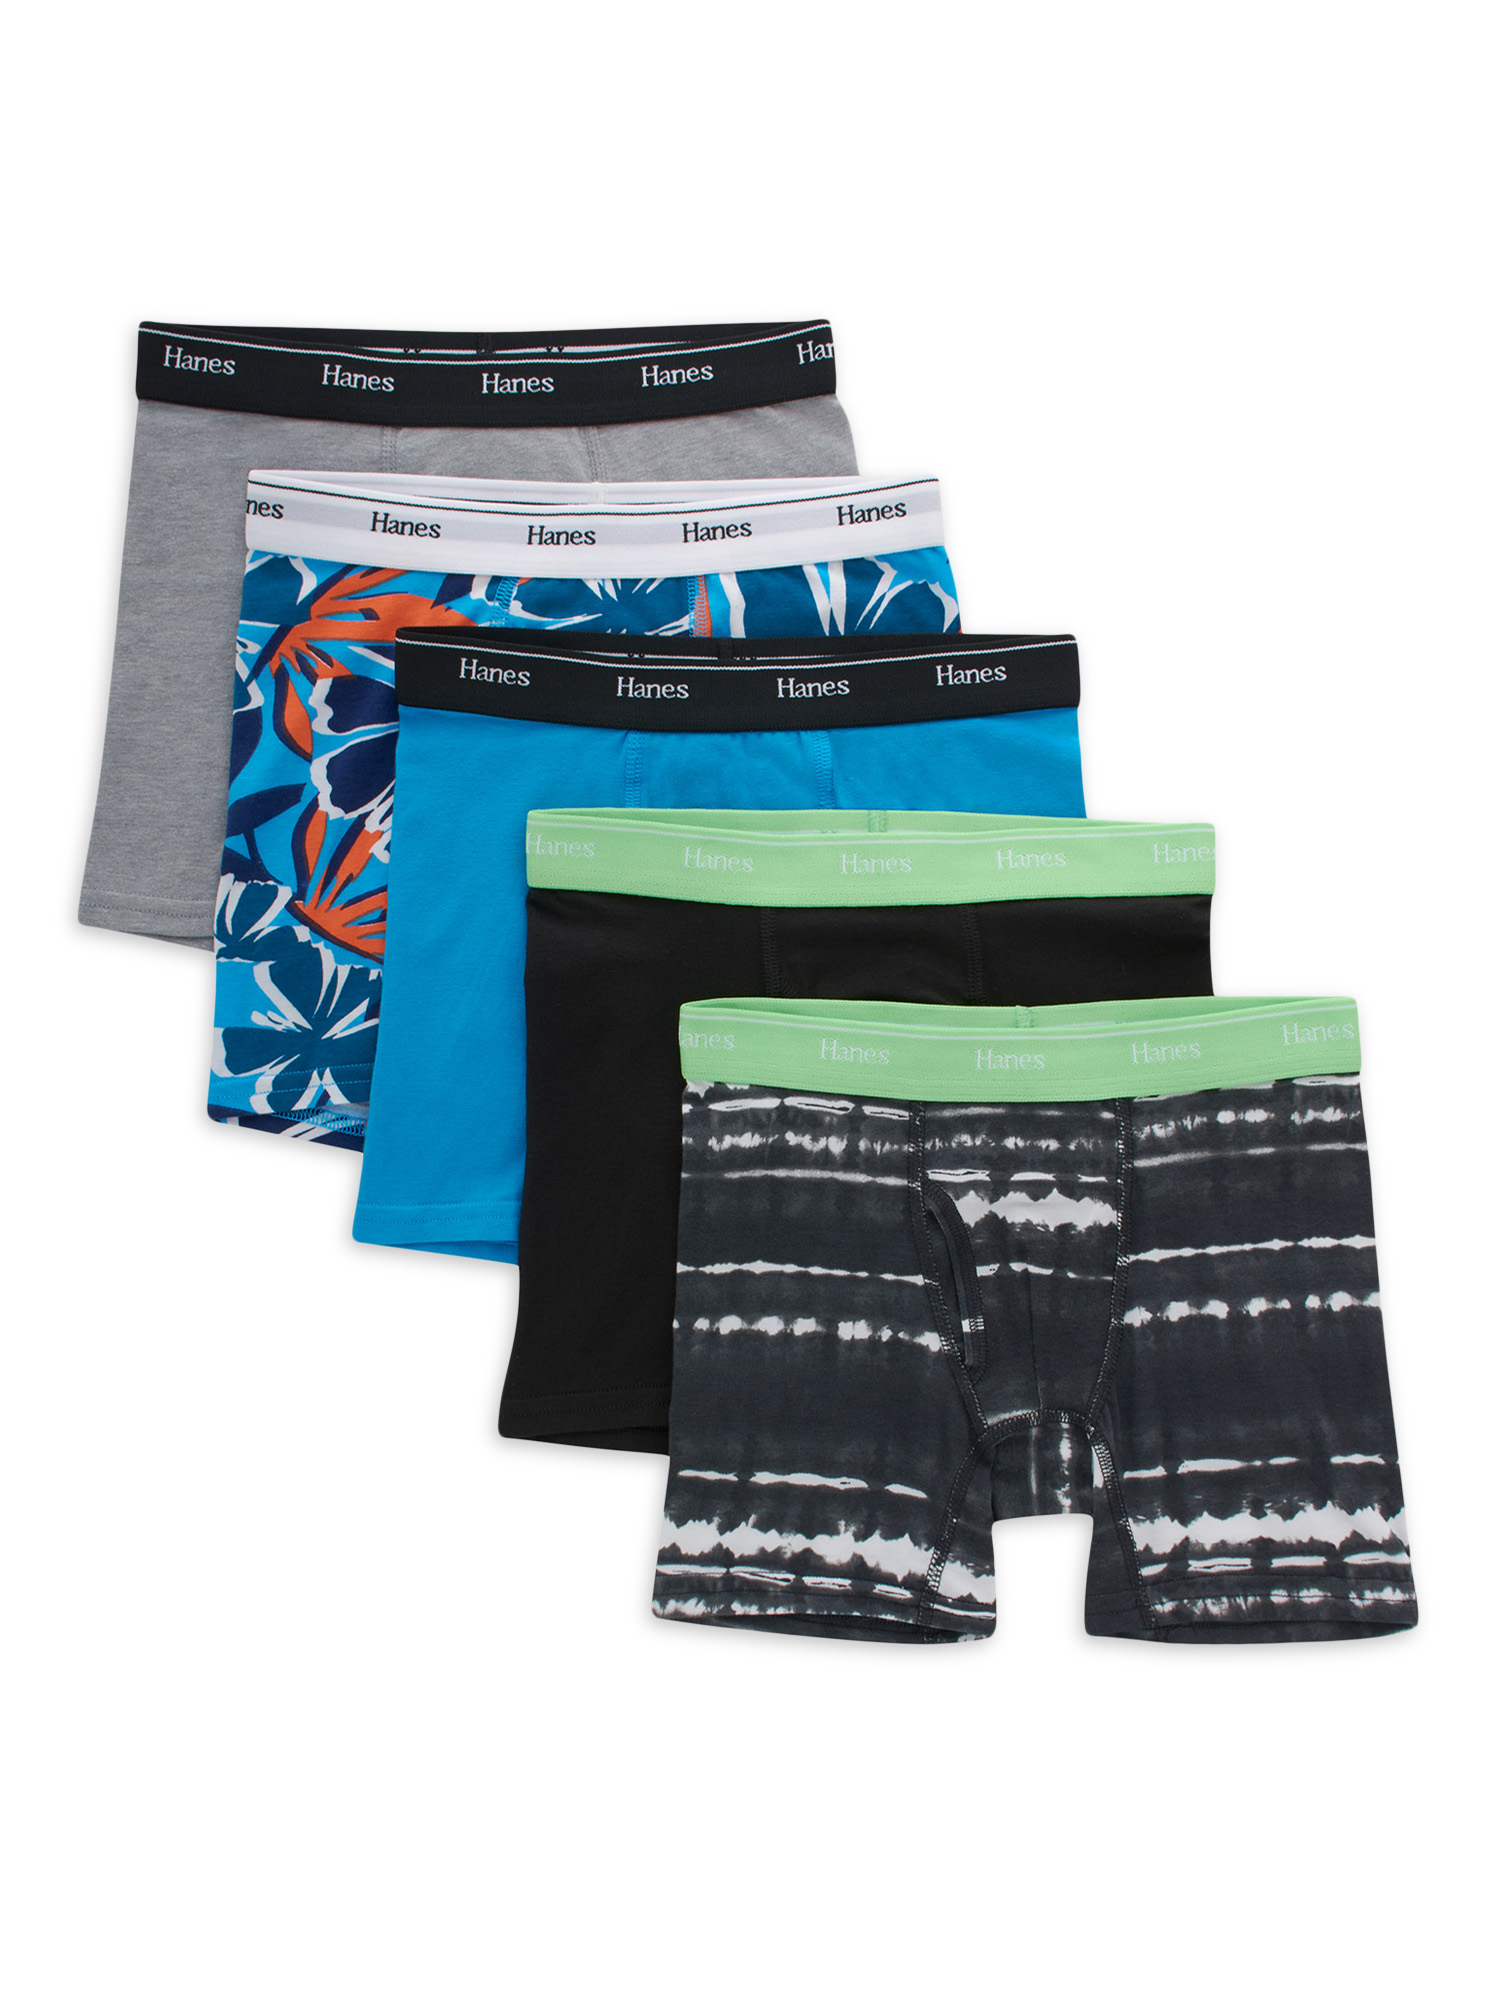 Hanes Originals Boys' Underwear Boxer Briefs, 5-Pack, Sizes S-XL - image 1 of 6